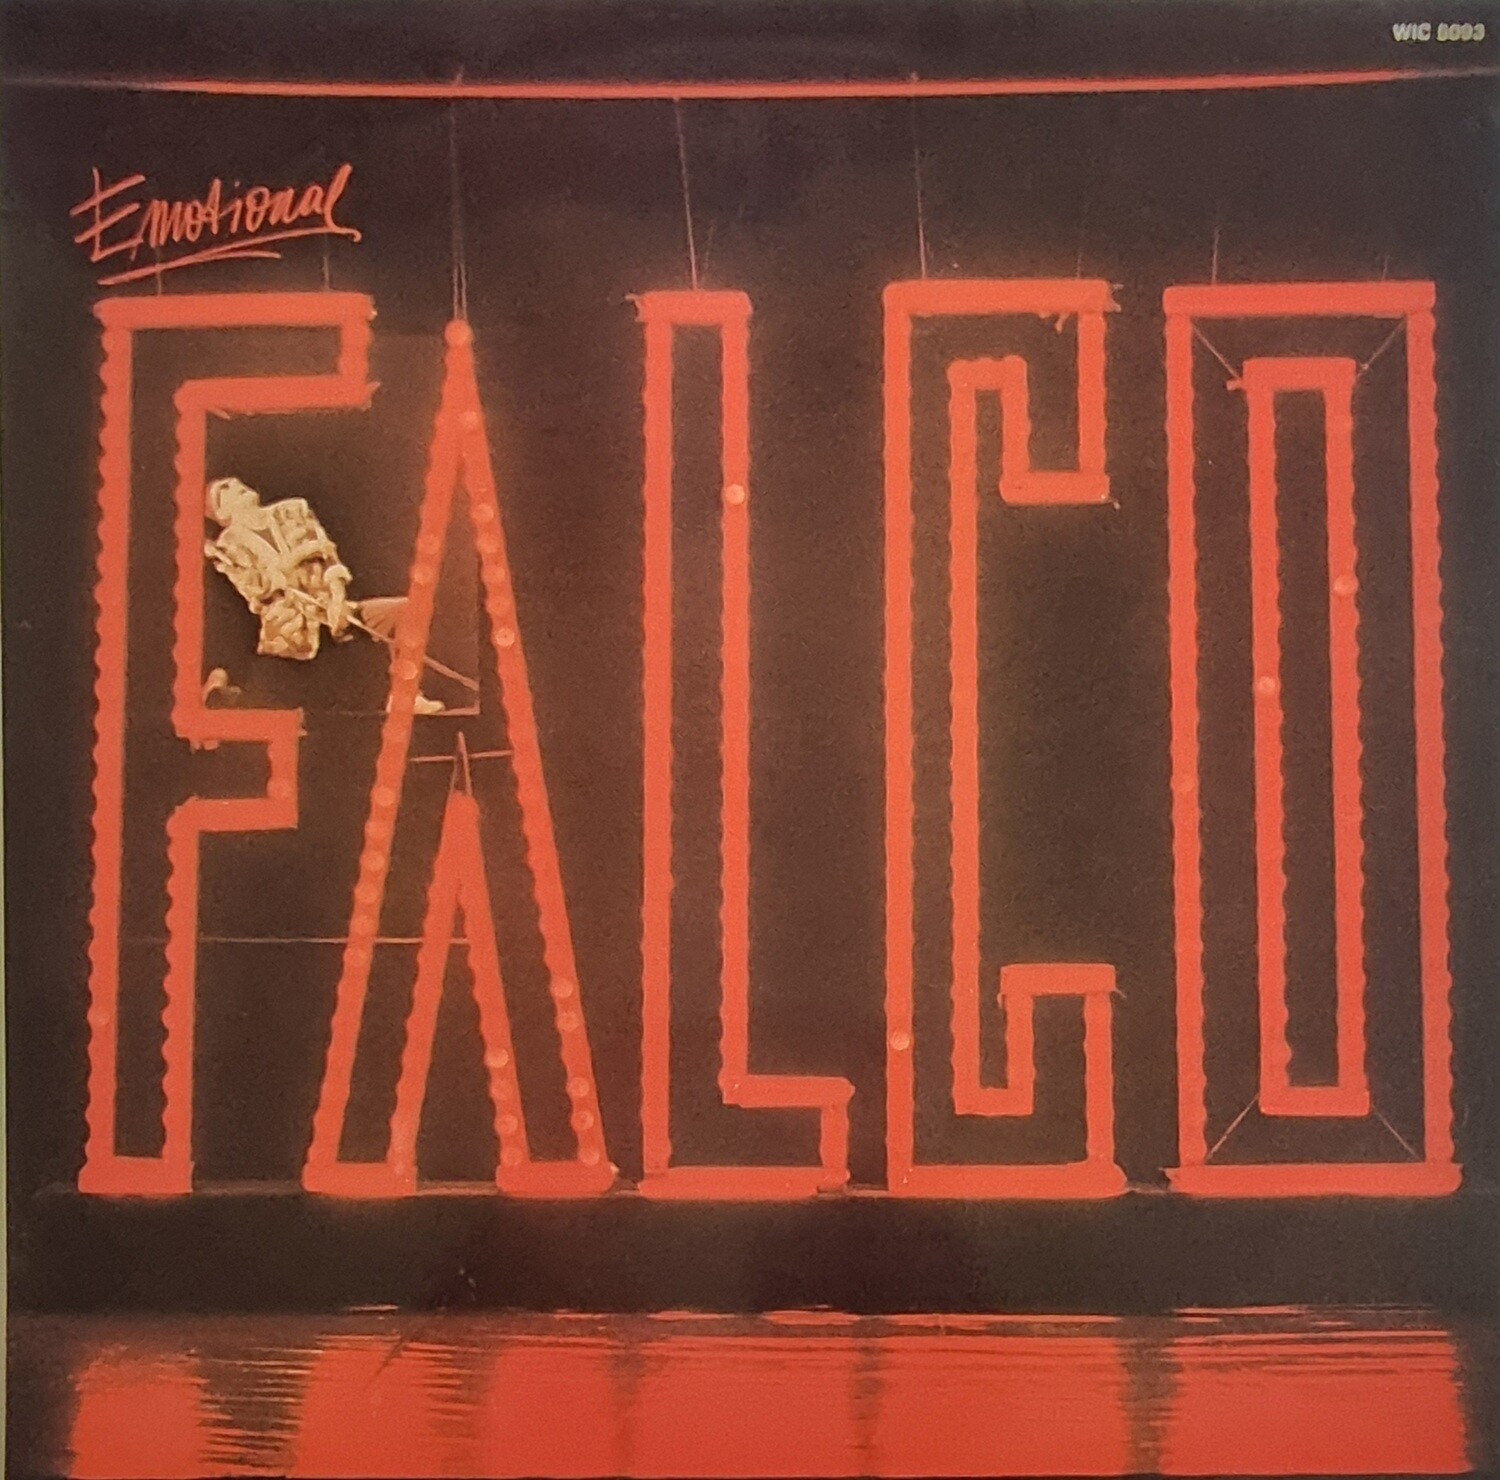 Falco – Emotional (1986)